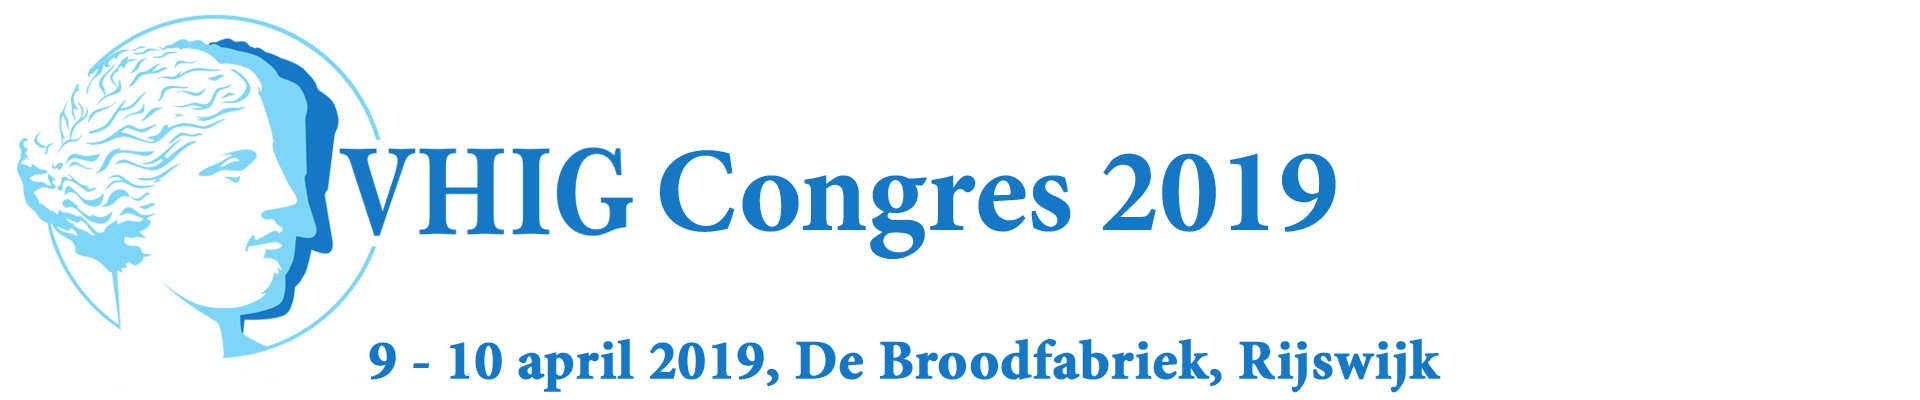 VHIG Congres 2019: Broodnodig